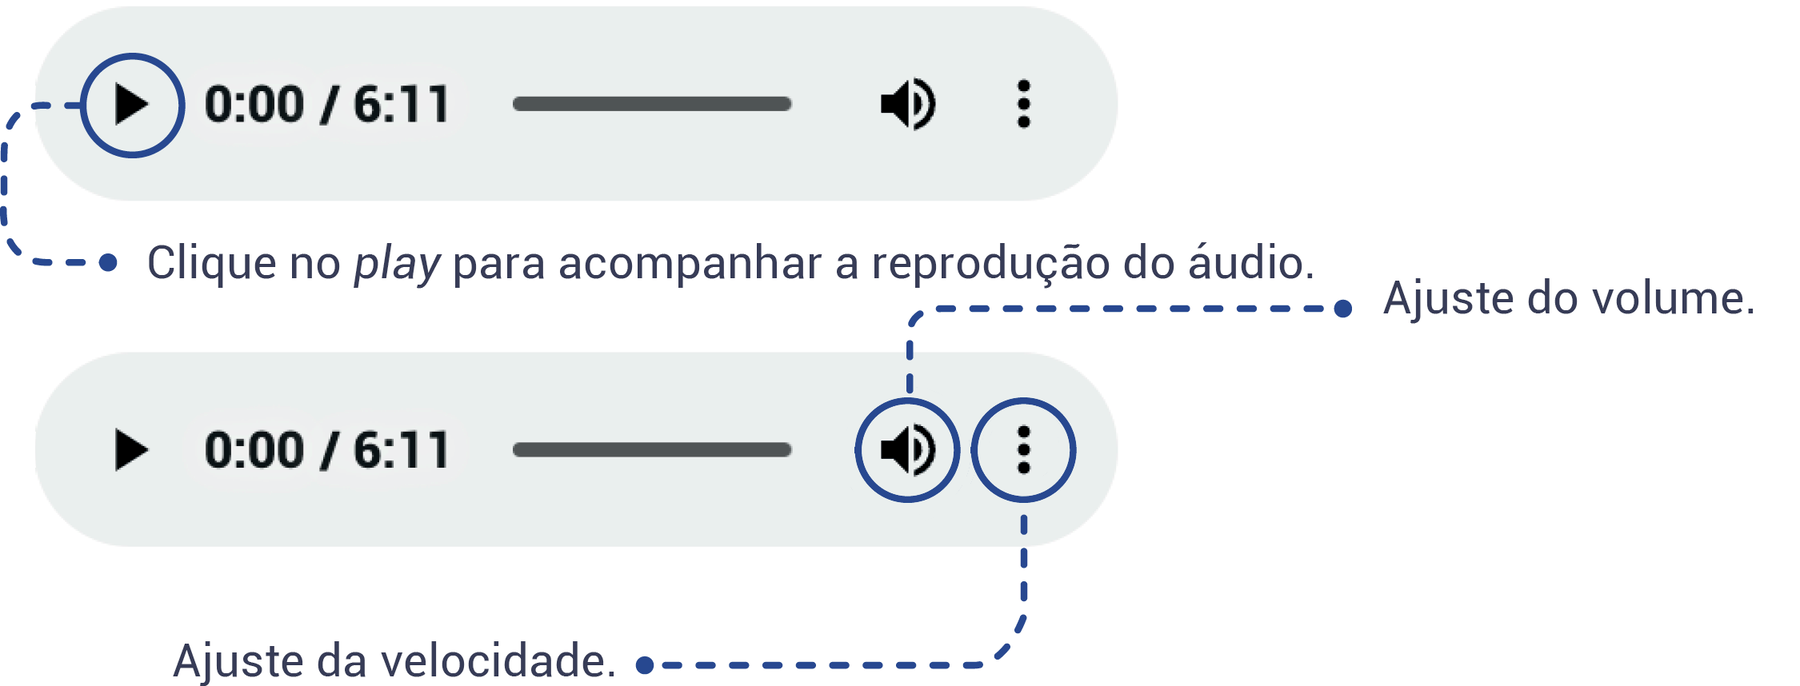 Esquema mostrando como deve ser feito a navegação do objeto digital ÁUDIO, indicando que o ícone play deve ser clicado para acompanhar a reprodução do áudio, o ícone de som deve ser usado para o ajuste de volume e o ícone com três pontos alinhados verticalmente serve para o ajuste da velocidade do áudio.